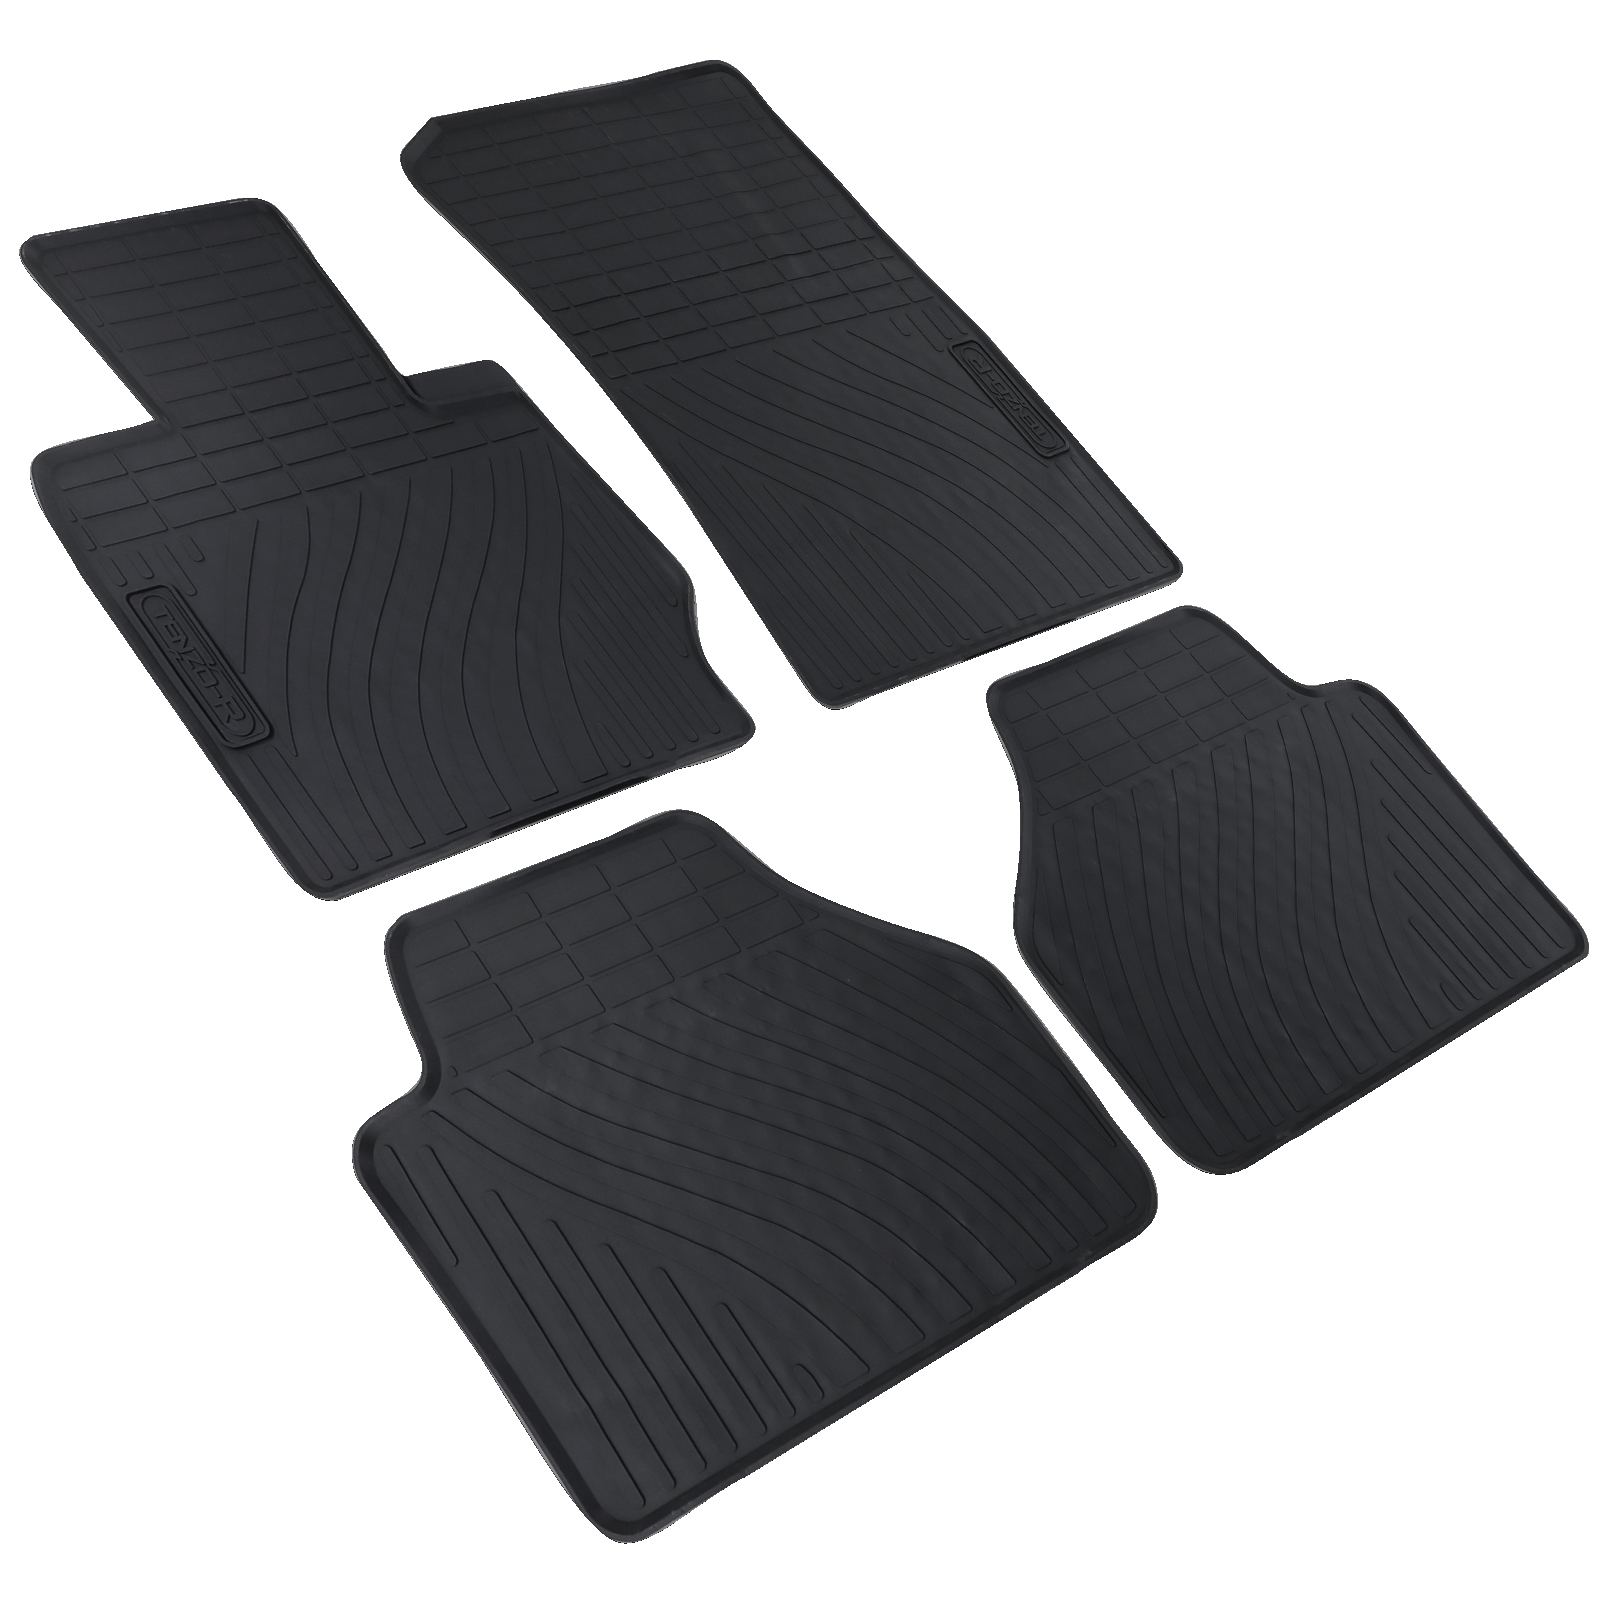 Auto Gummi Fußmatten Schwarz Premium Set passend für BMW X4 F26 13-18 kaufen